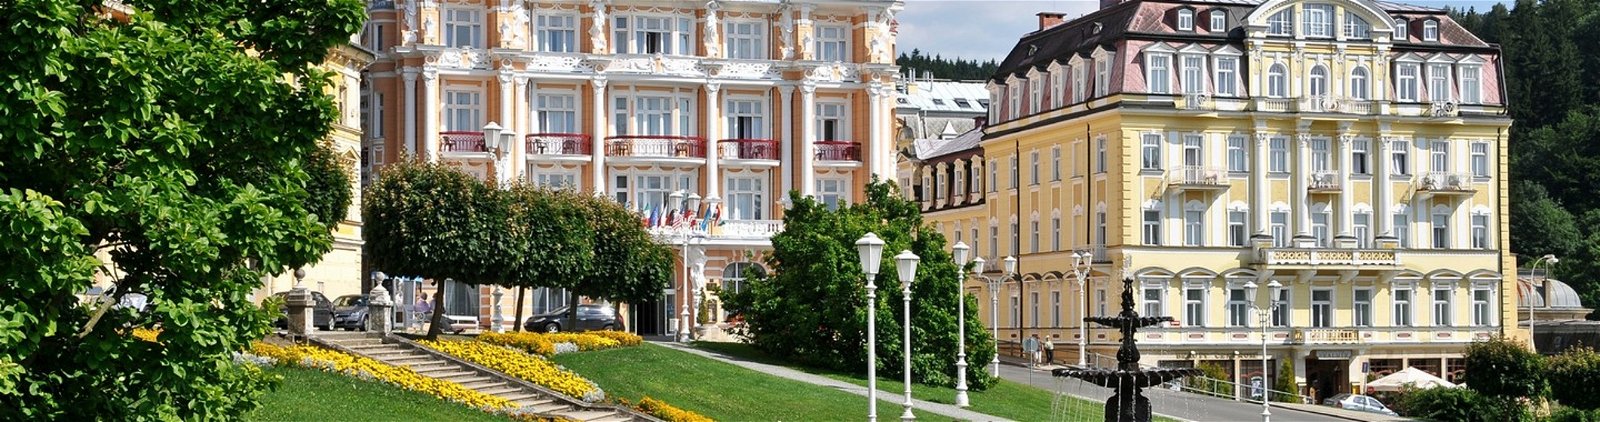 Hotelbonnen voor Tsjechië